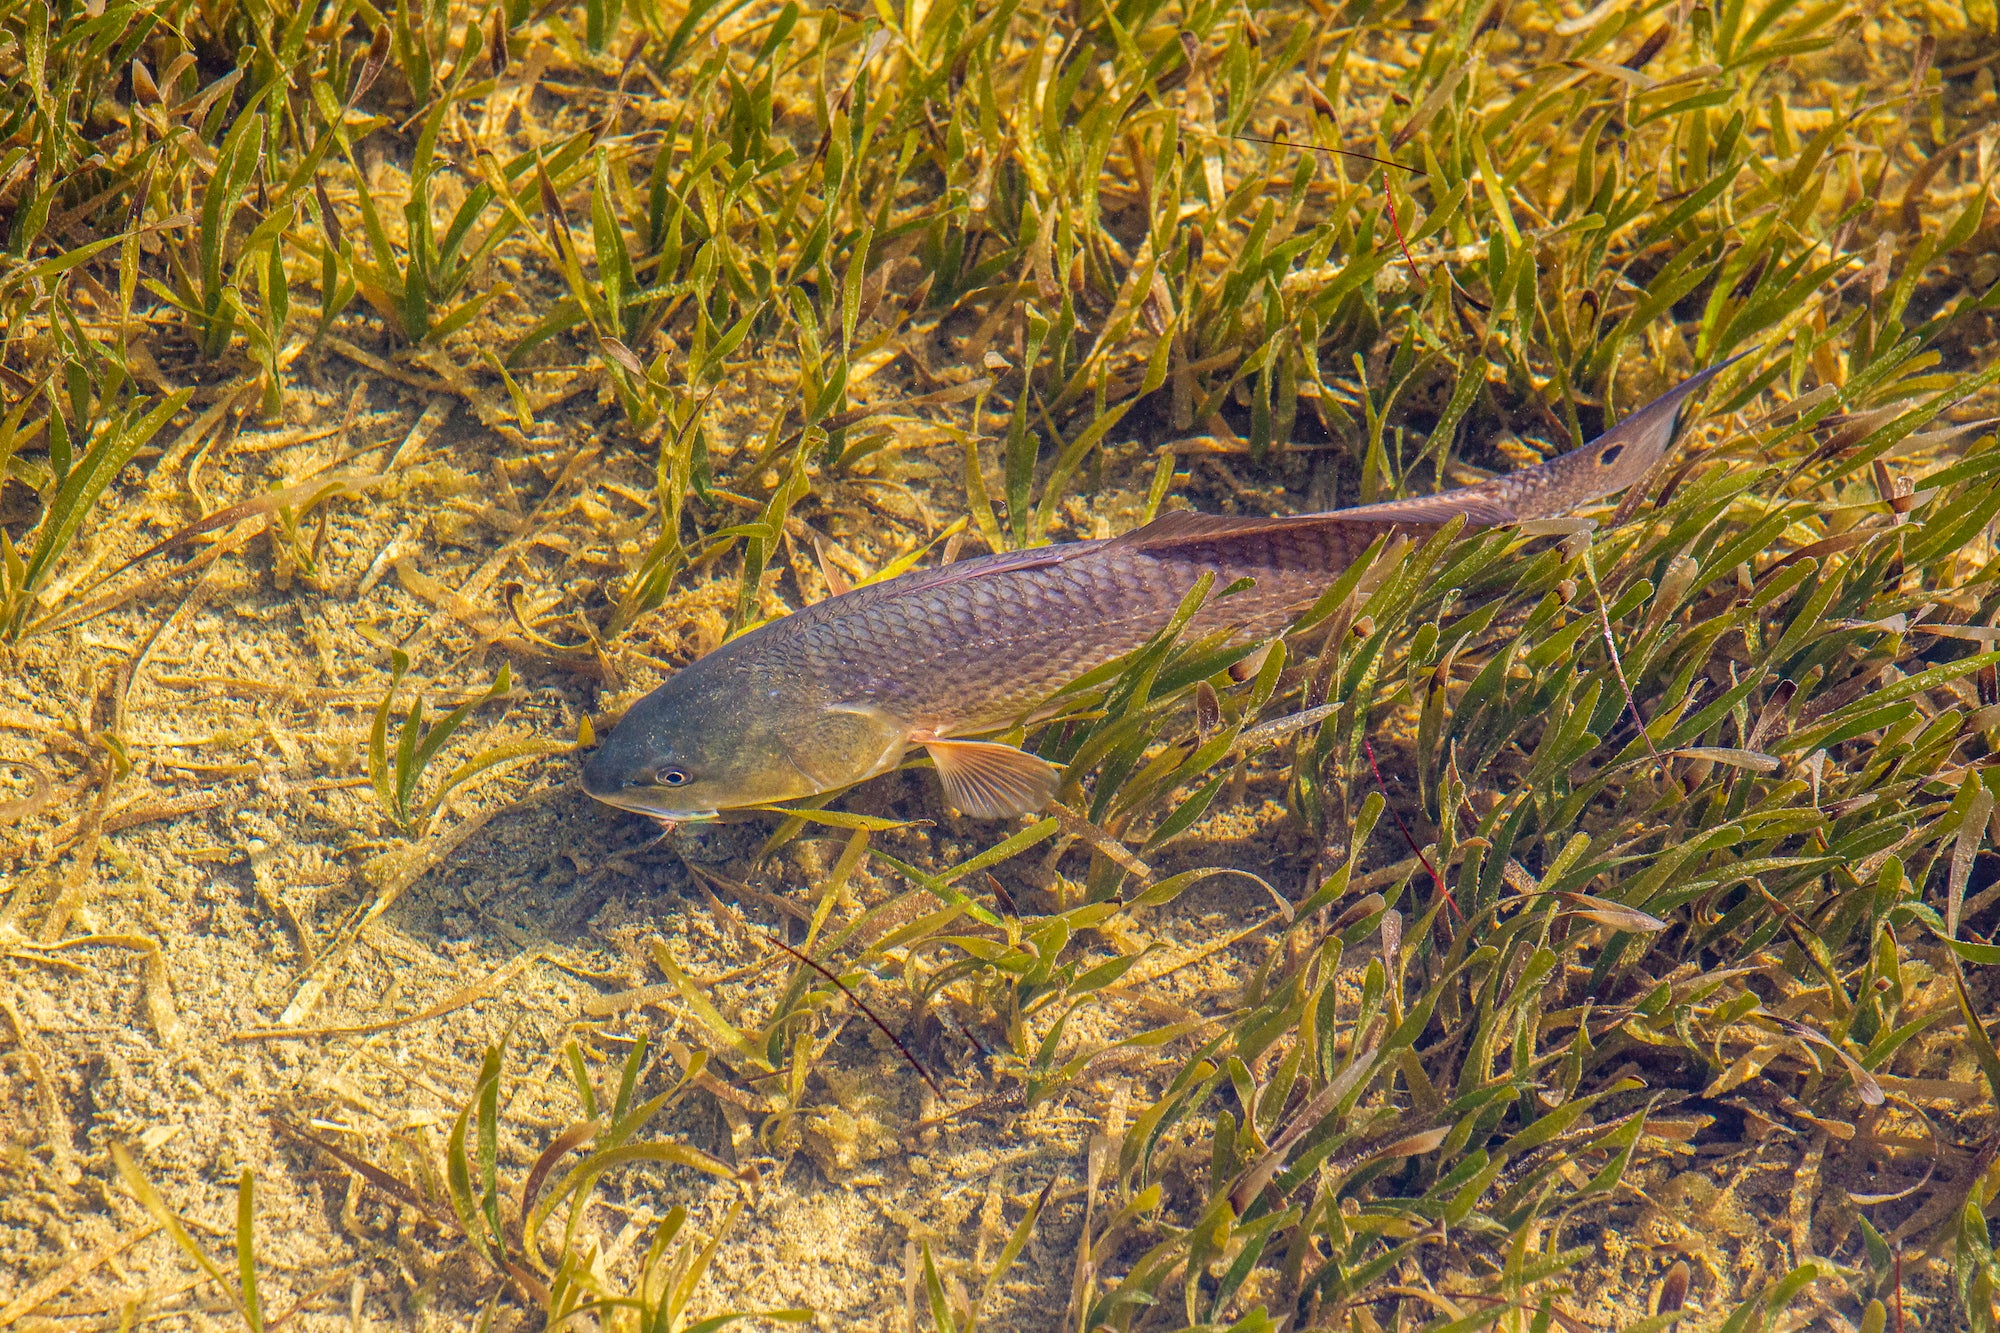 Sébaste de Floride nageant dans l'herbe.